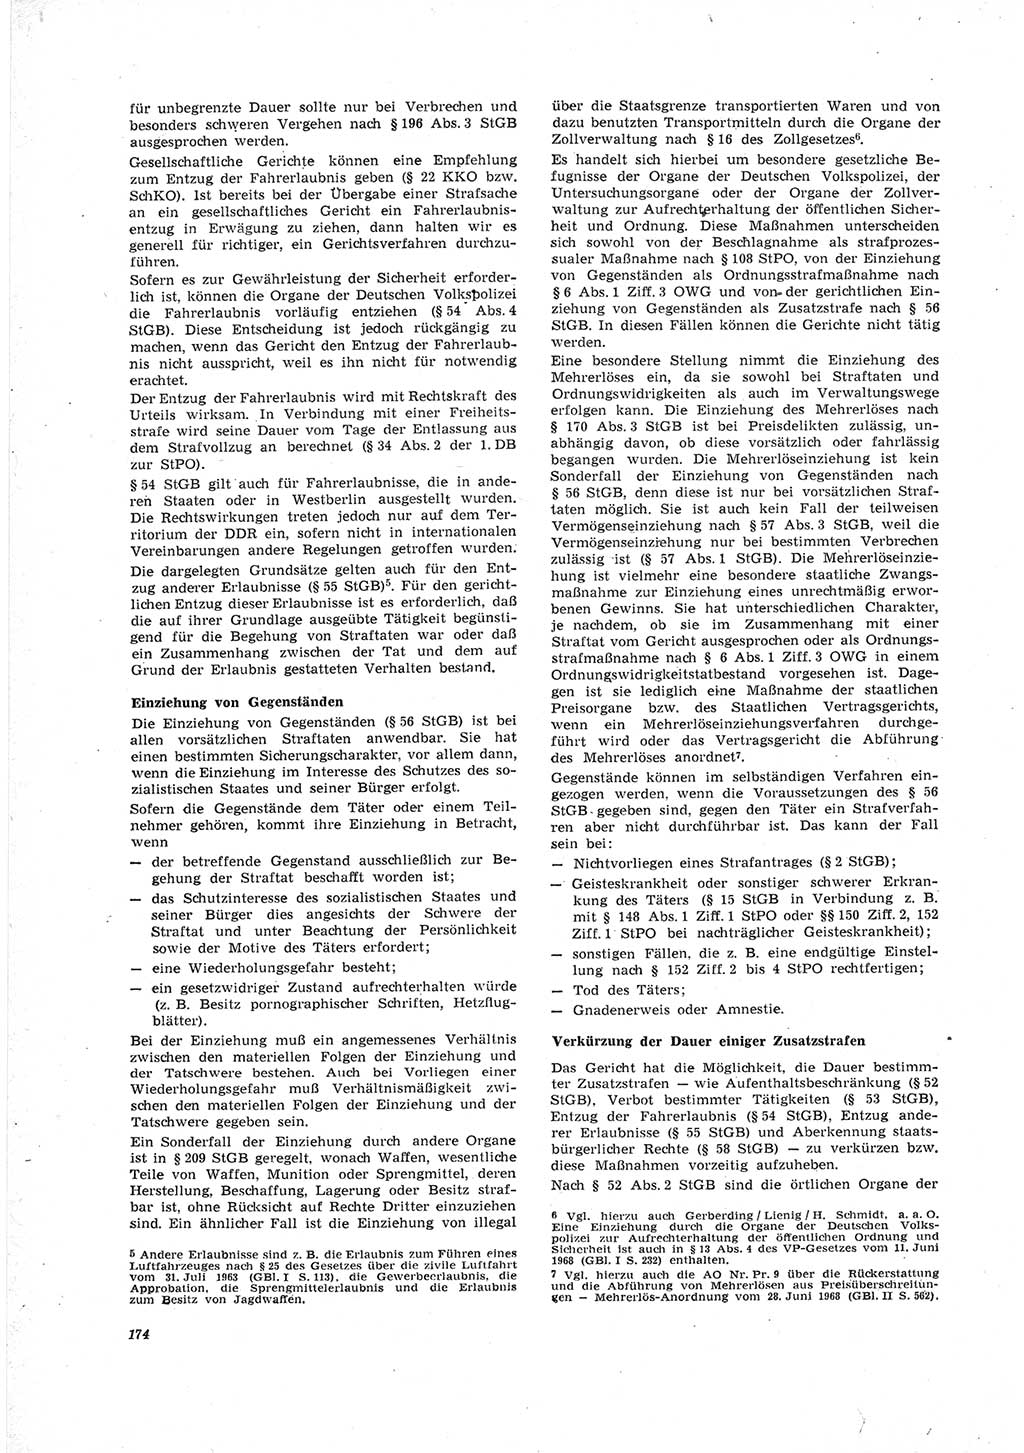 Neue Justiz (NJ), Zeitschrift für Recht und Rechtswissenschaft [Deutsche Demokratische Republik (DDR)], 23. Jahrgang 1969, Seite 174 (NJ DDR 1969, S. 174)